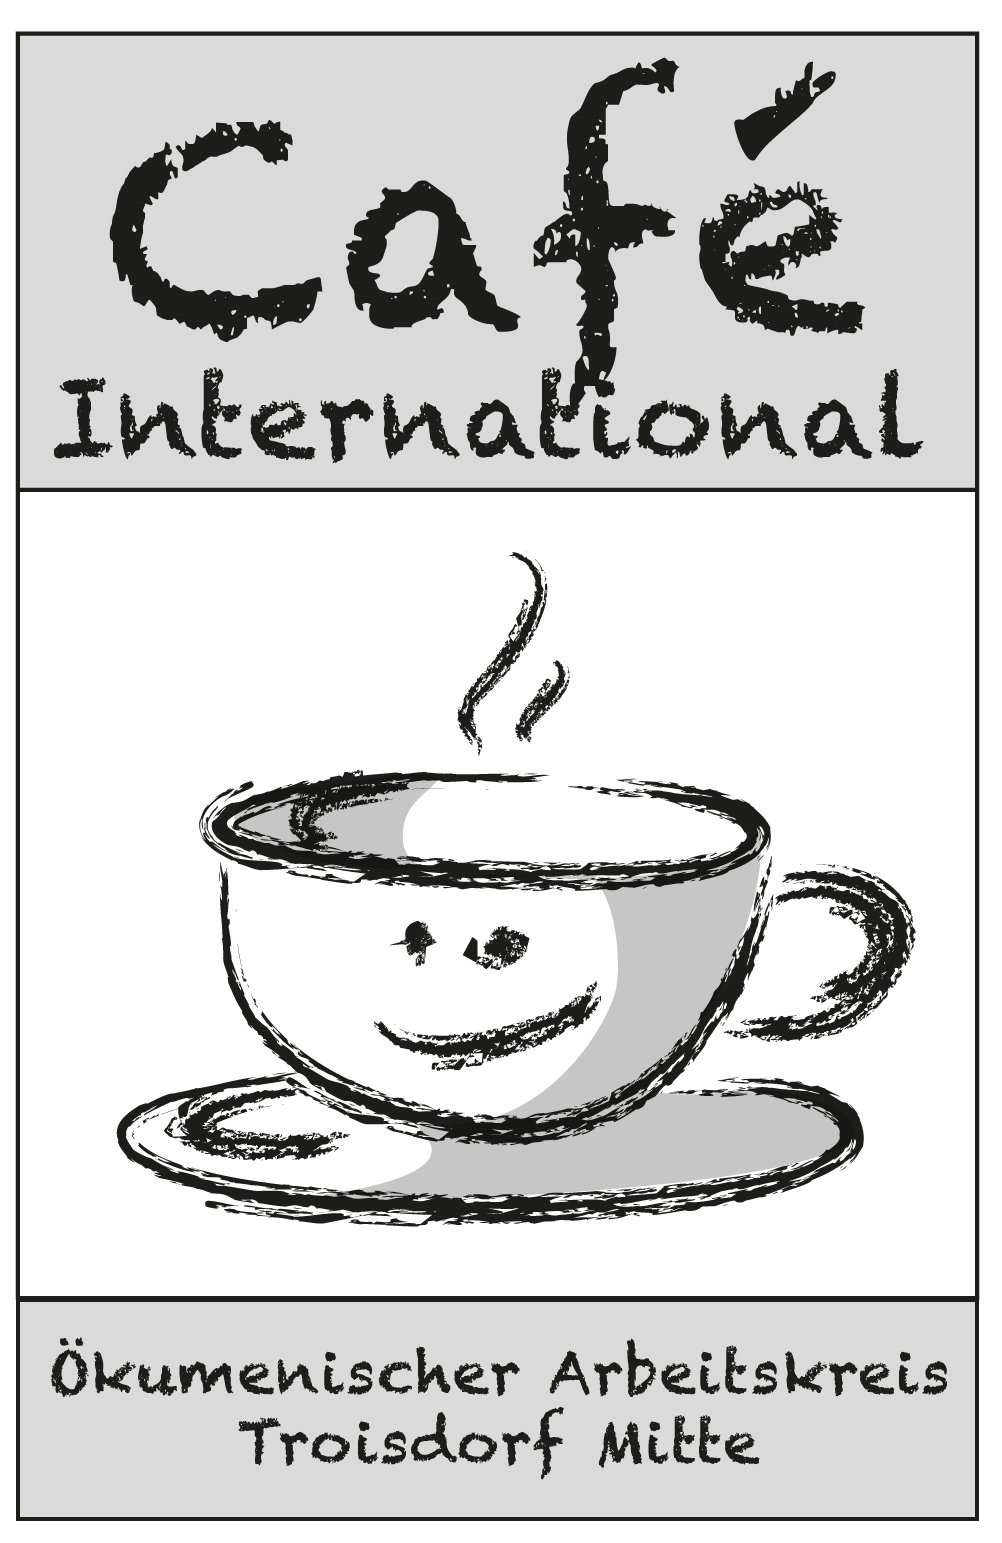 Logo-CafeInternational (c) Ökumenischer Arbeitskreis Troisdorf